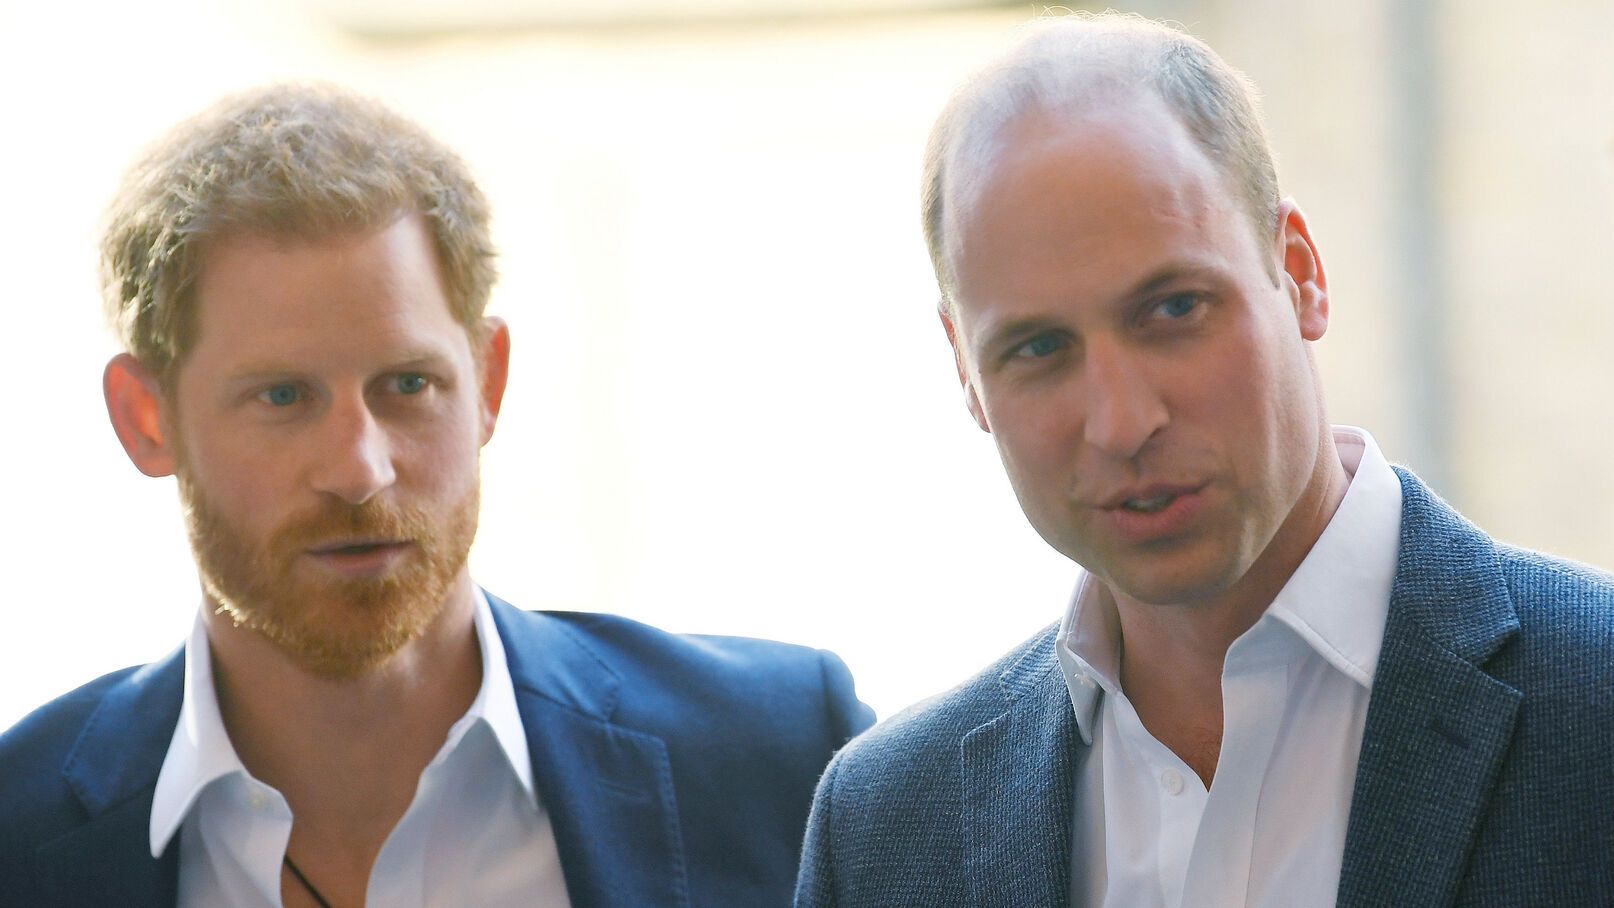 Les princes William et Harry en froid : La phrase malheureuse que regrette le duc de Cambridge